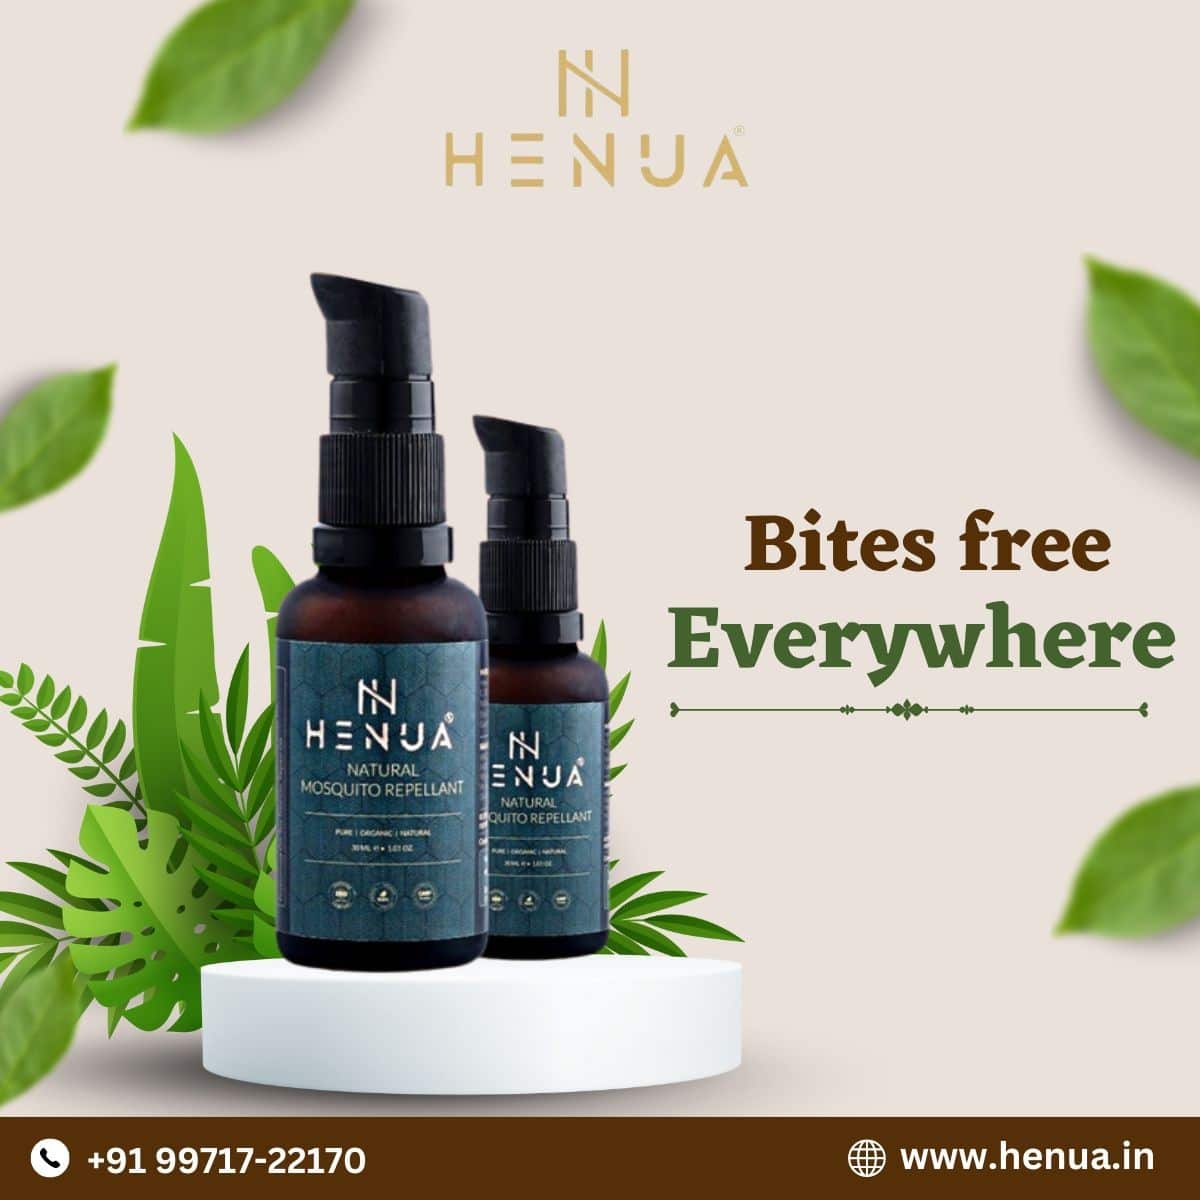 Henua-Natural-Mosquito-Repellent-Make-Yourself-Bite-Free